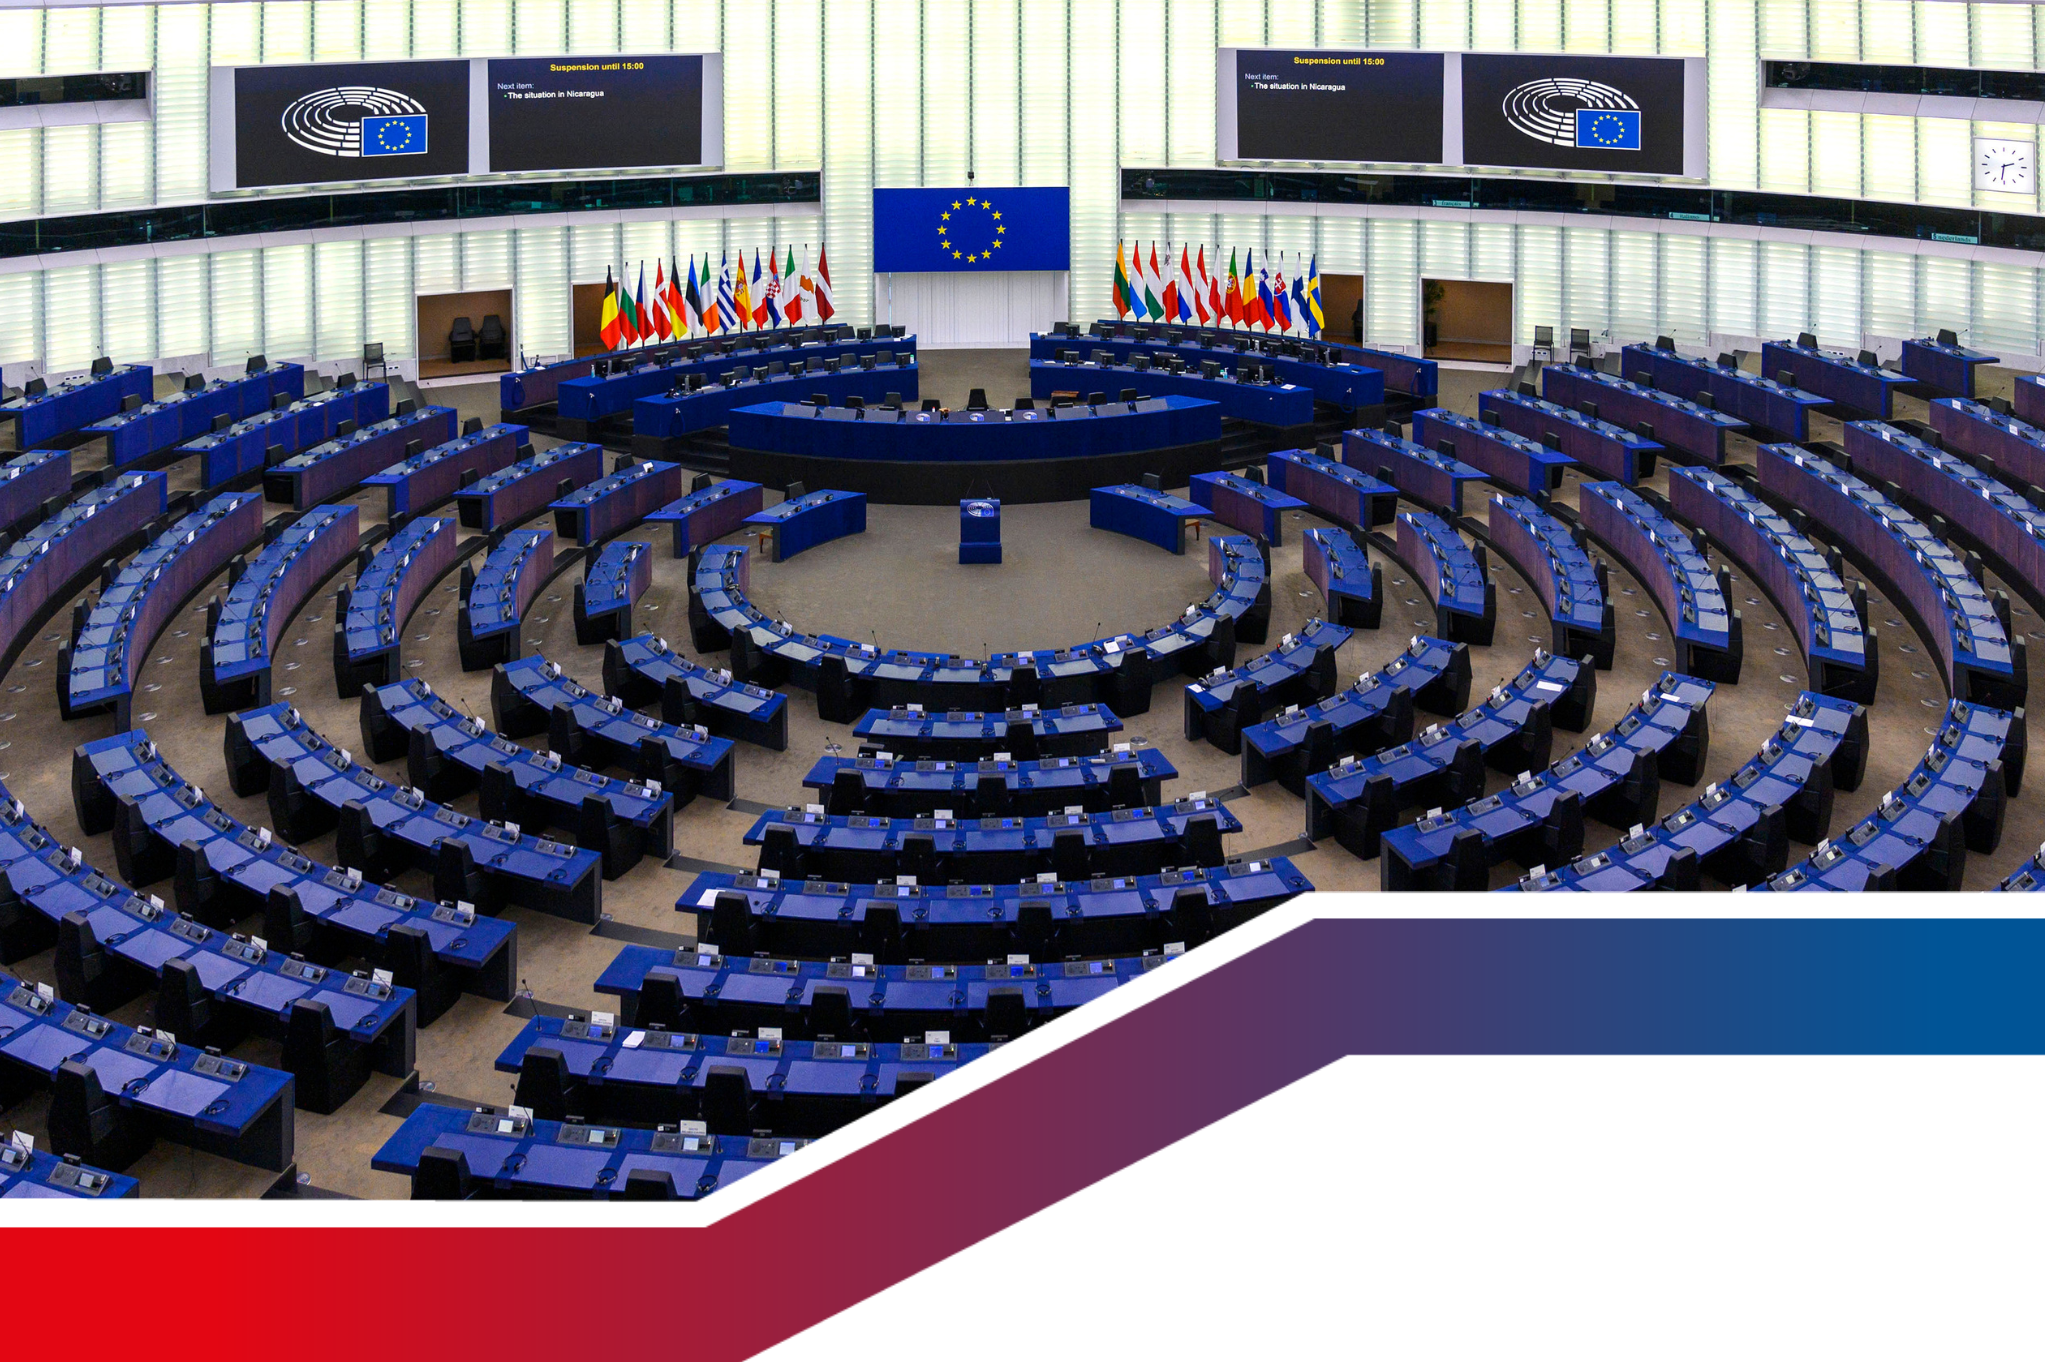 Der Plenarsaal im Europäischen Parlament, wo 705 Abgeordnete aus 27 Mitgliedstaaten regelmäßig tagen.